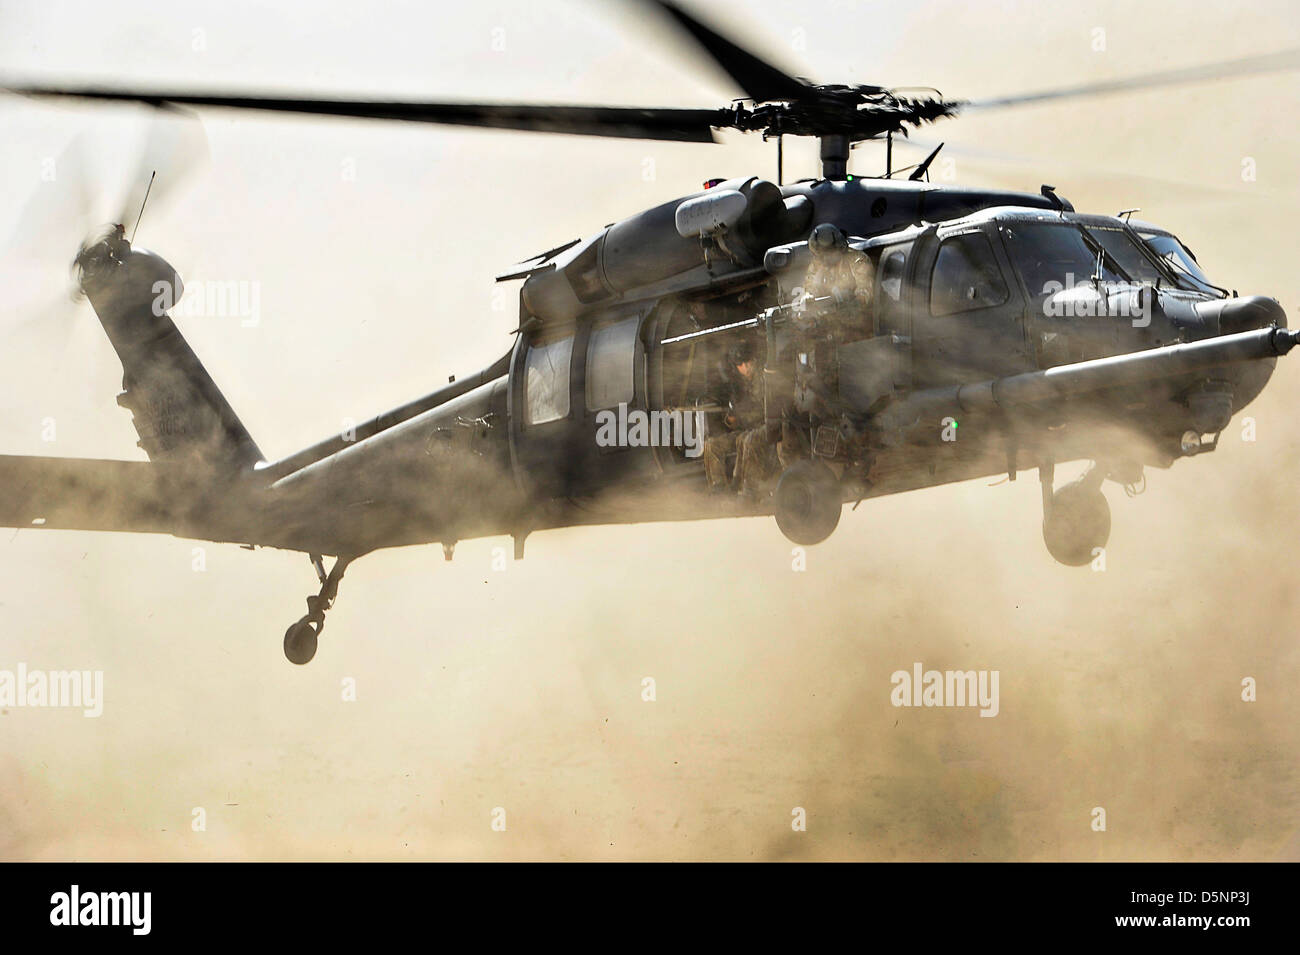 Ein uns Air Force HH - 60G Pave Hawk Hubschrauber kommt für eine schnelle Landung, während eine Bekämpfung Such- und Rettungsaktionen Übung 23. März 2013 in der großen Wüste Bara, Dschibuti Pararescuemen abholen. Stockfoto